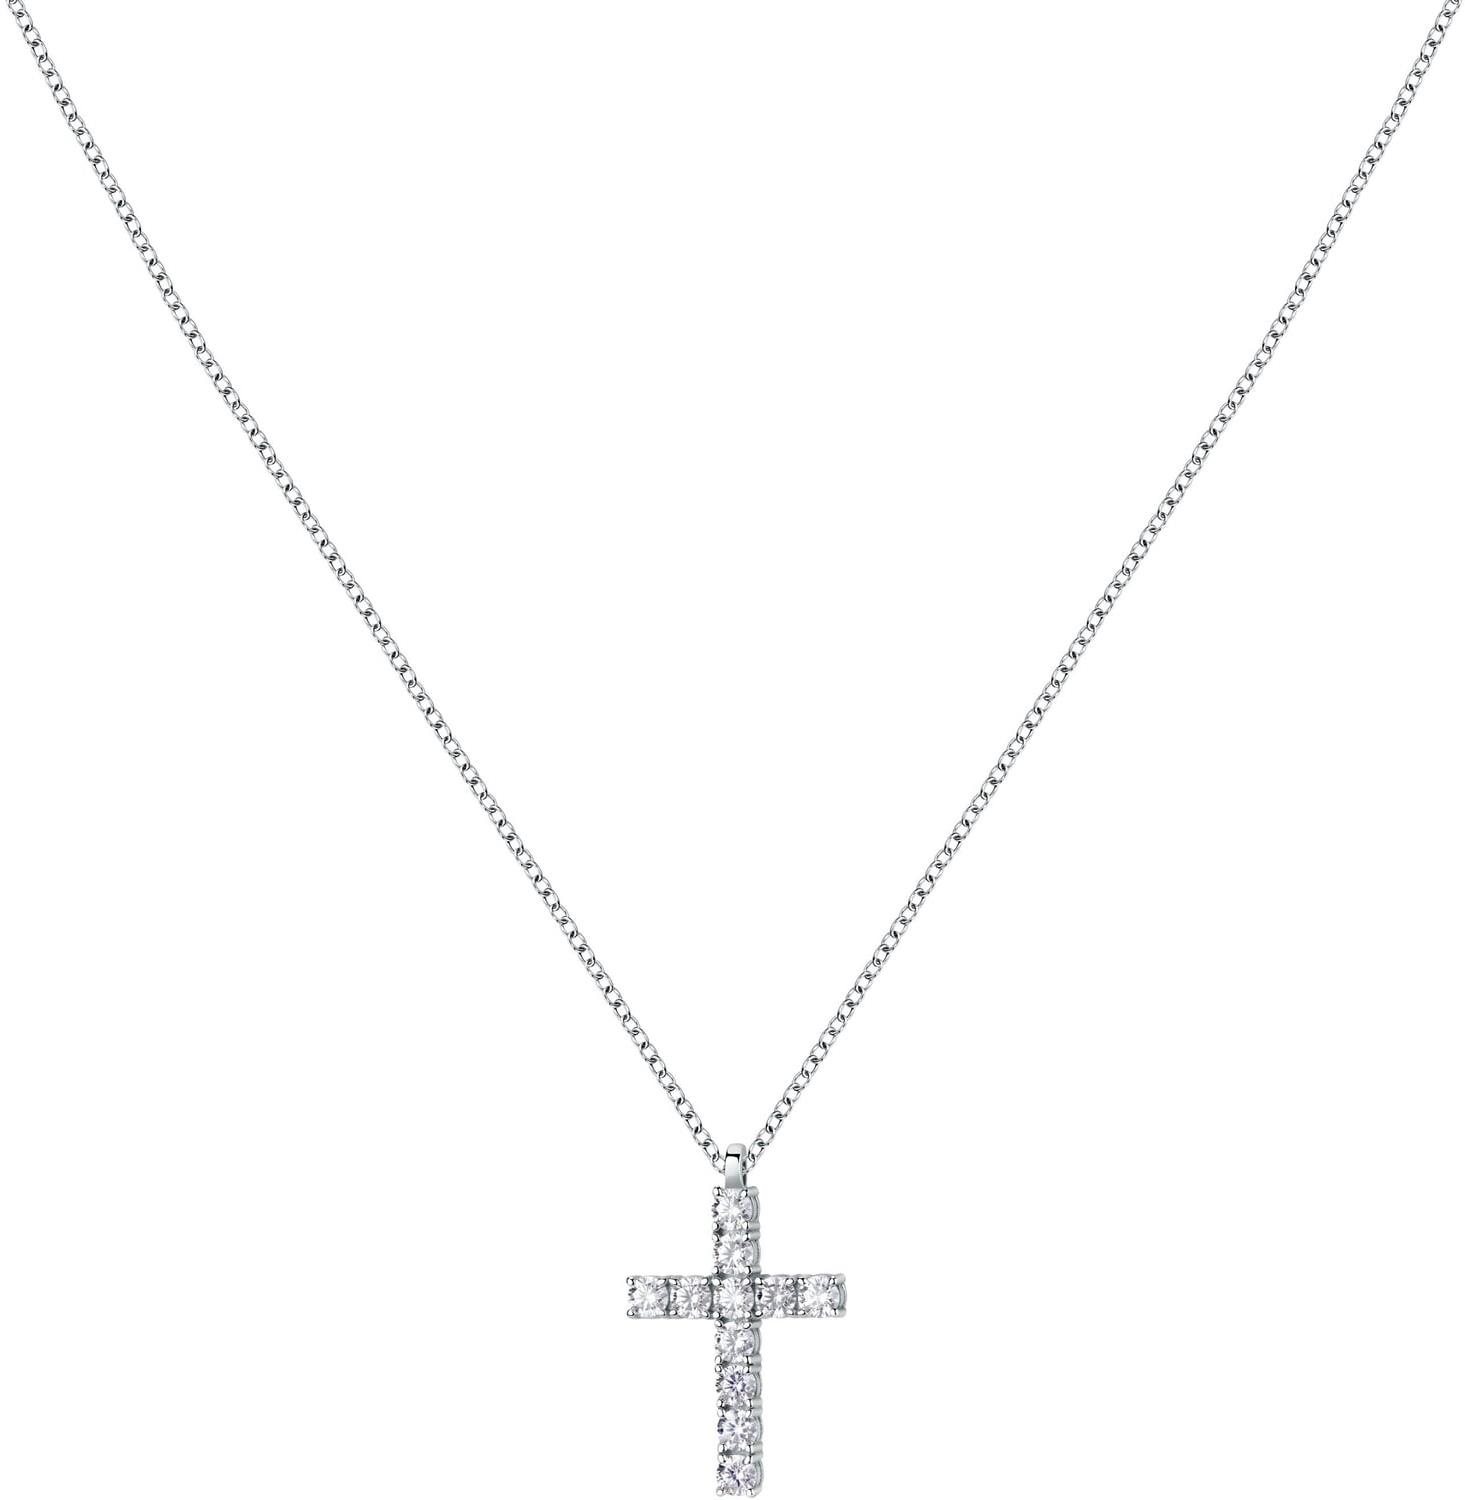 Morellato Modern ezüst nyaklánc kereszttel Medium Crosses Tesori SAIW117